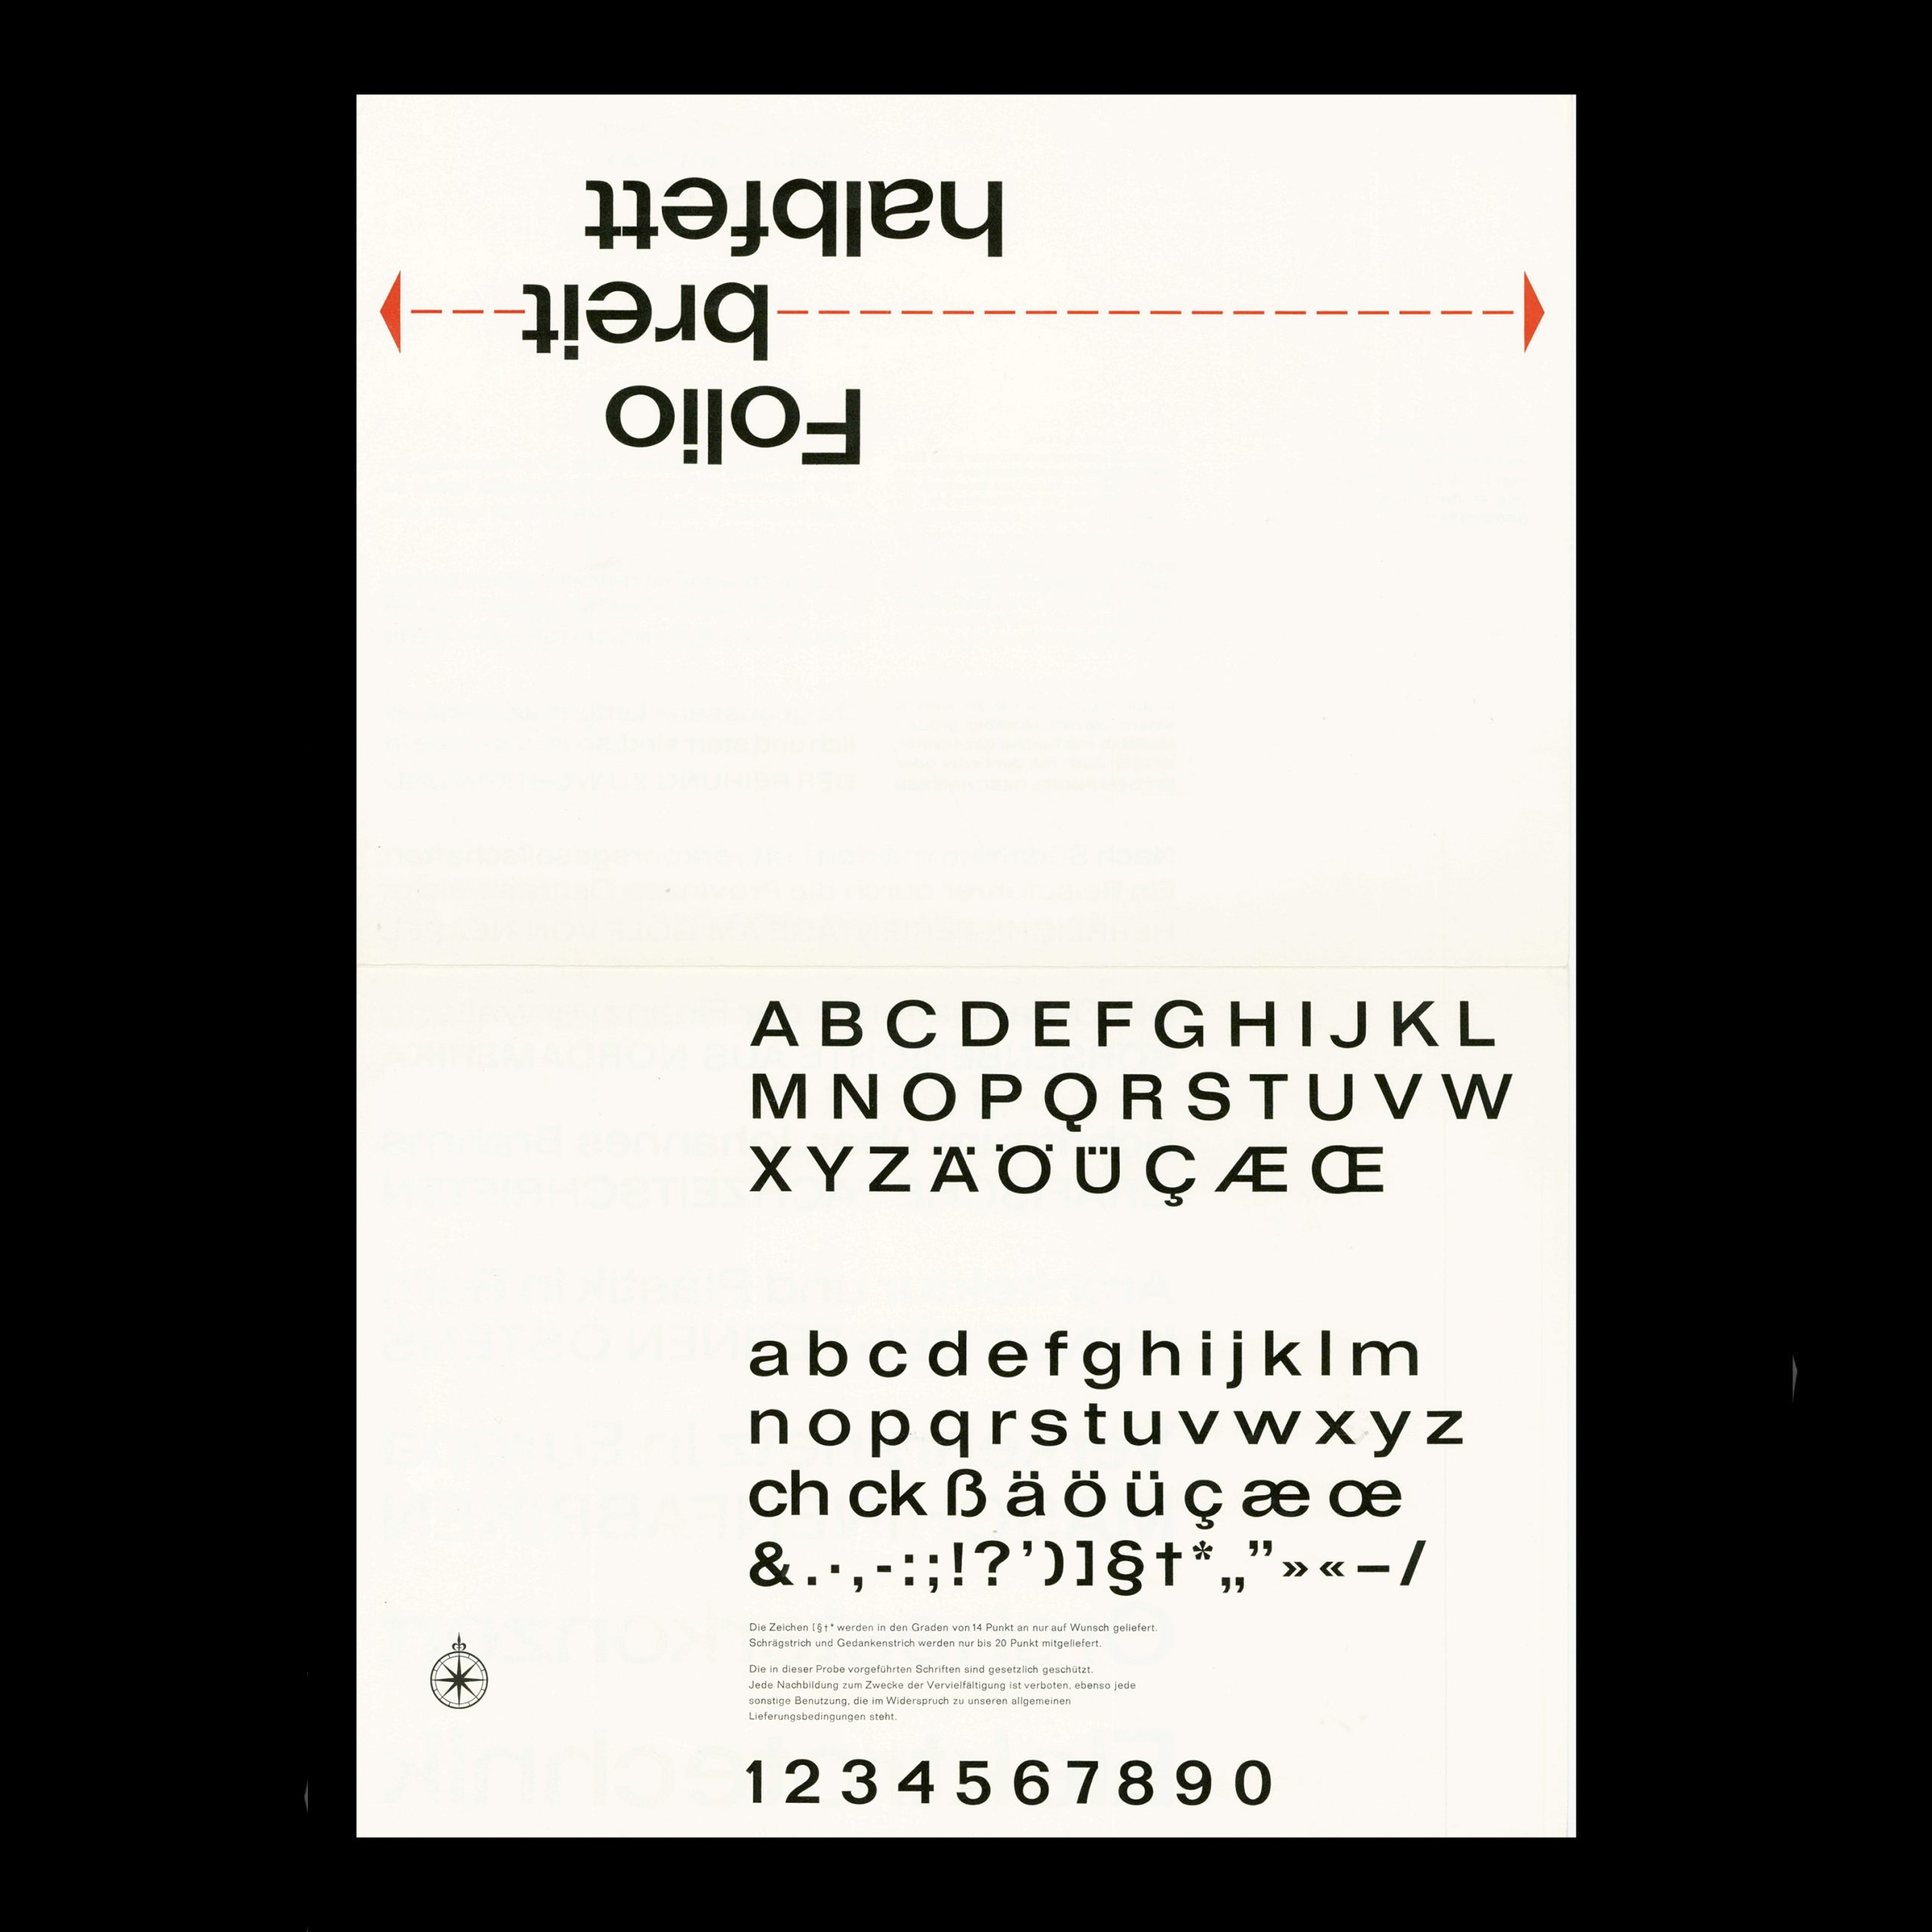 Die Folio, Bauersche Giesserei, Type Specimen, 1965 